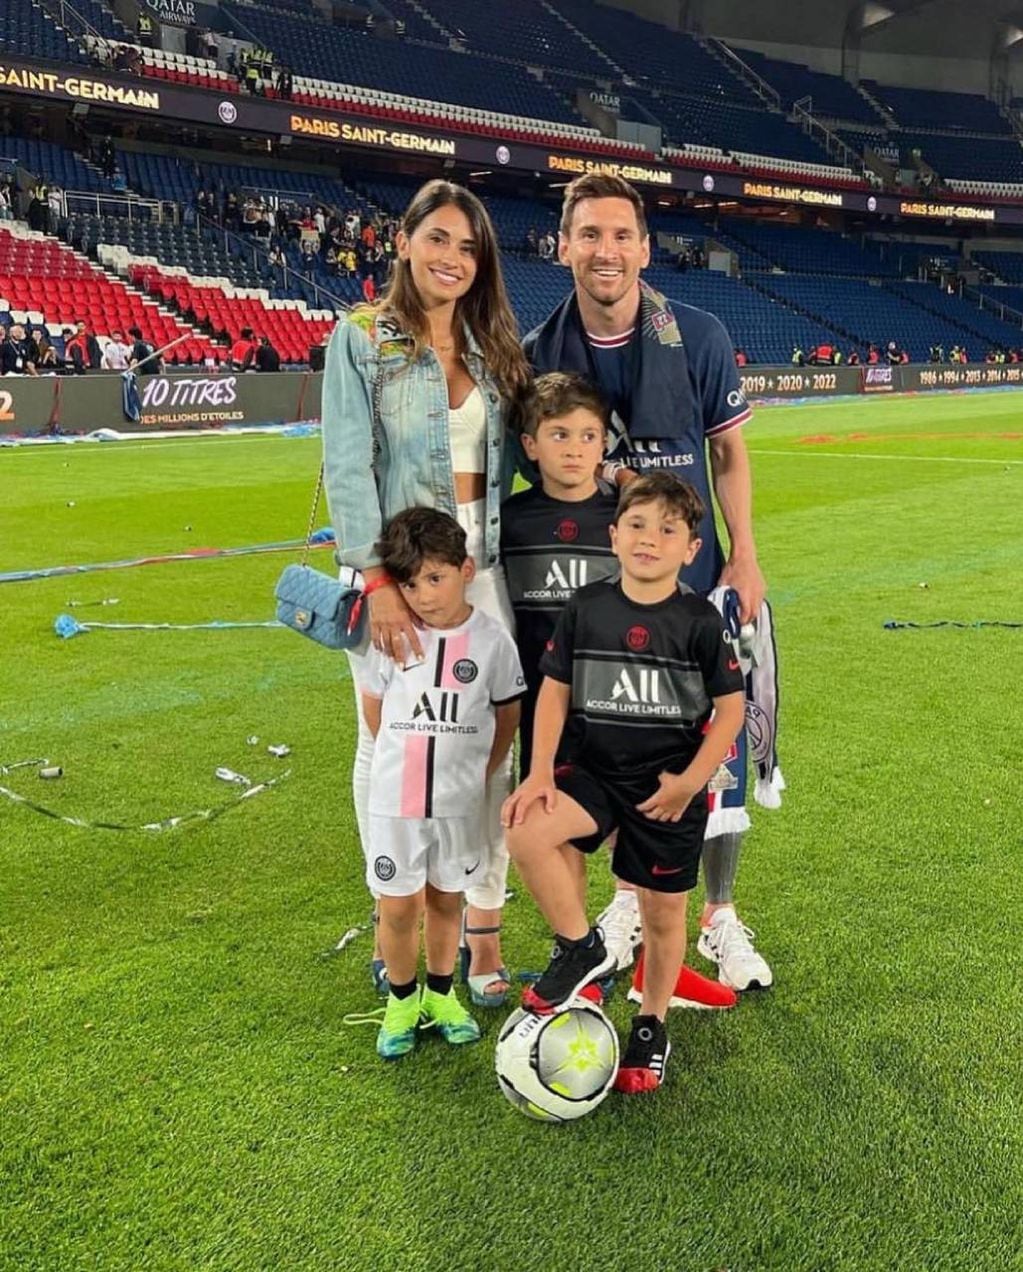 Lionel Messi cerró su primera temporada en París Saint-Germain (PSG). Después del último partido se sacó una foto en la cancha con su esposa Antonela Roccuzzo y sus hijos Thiago Messi, Mateo Messi y Ciro Messi.